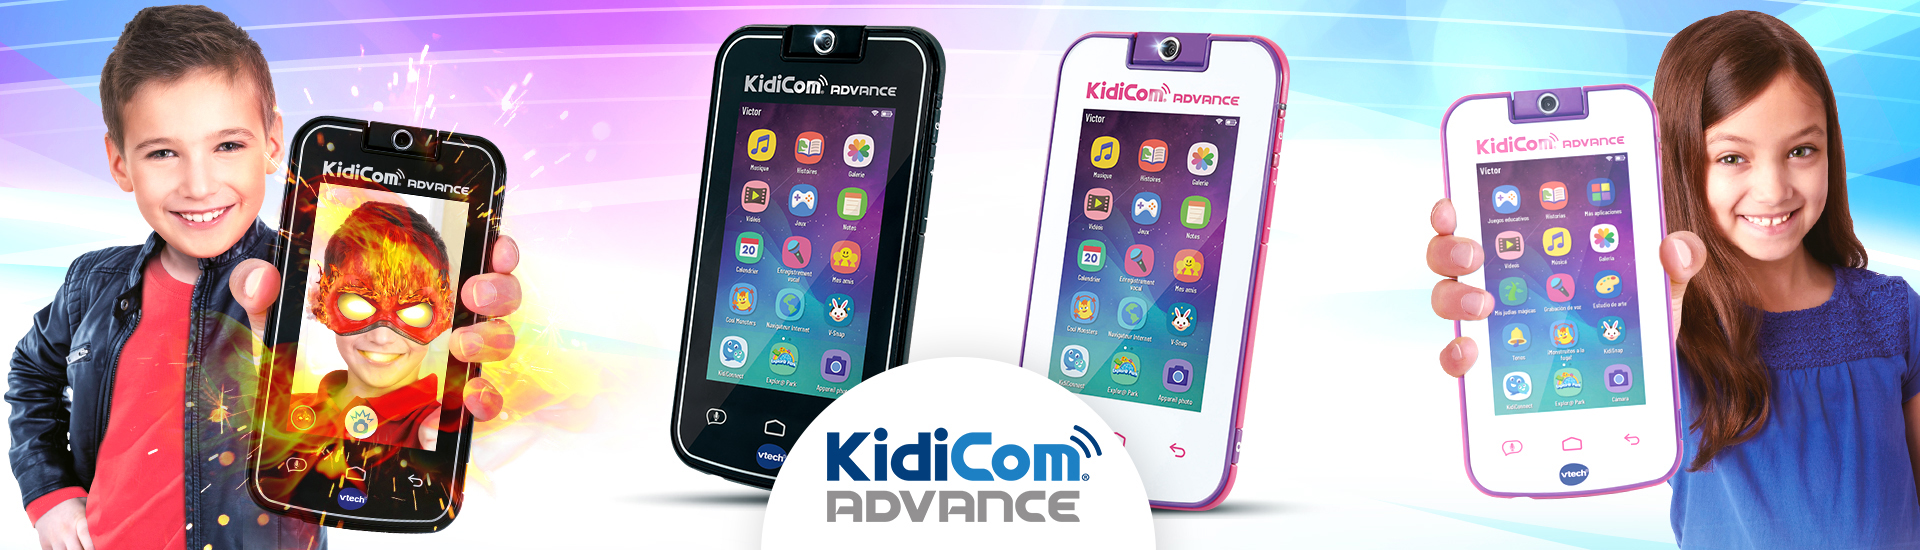 Kidicom Max & KidiCom Advance - le portable pour les enfants